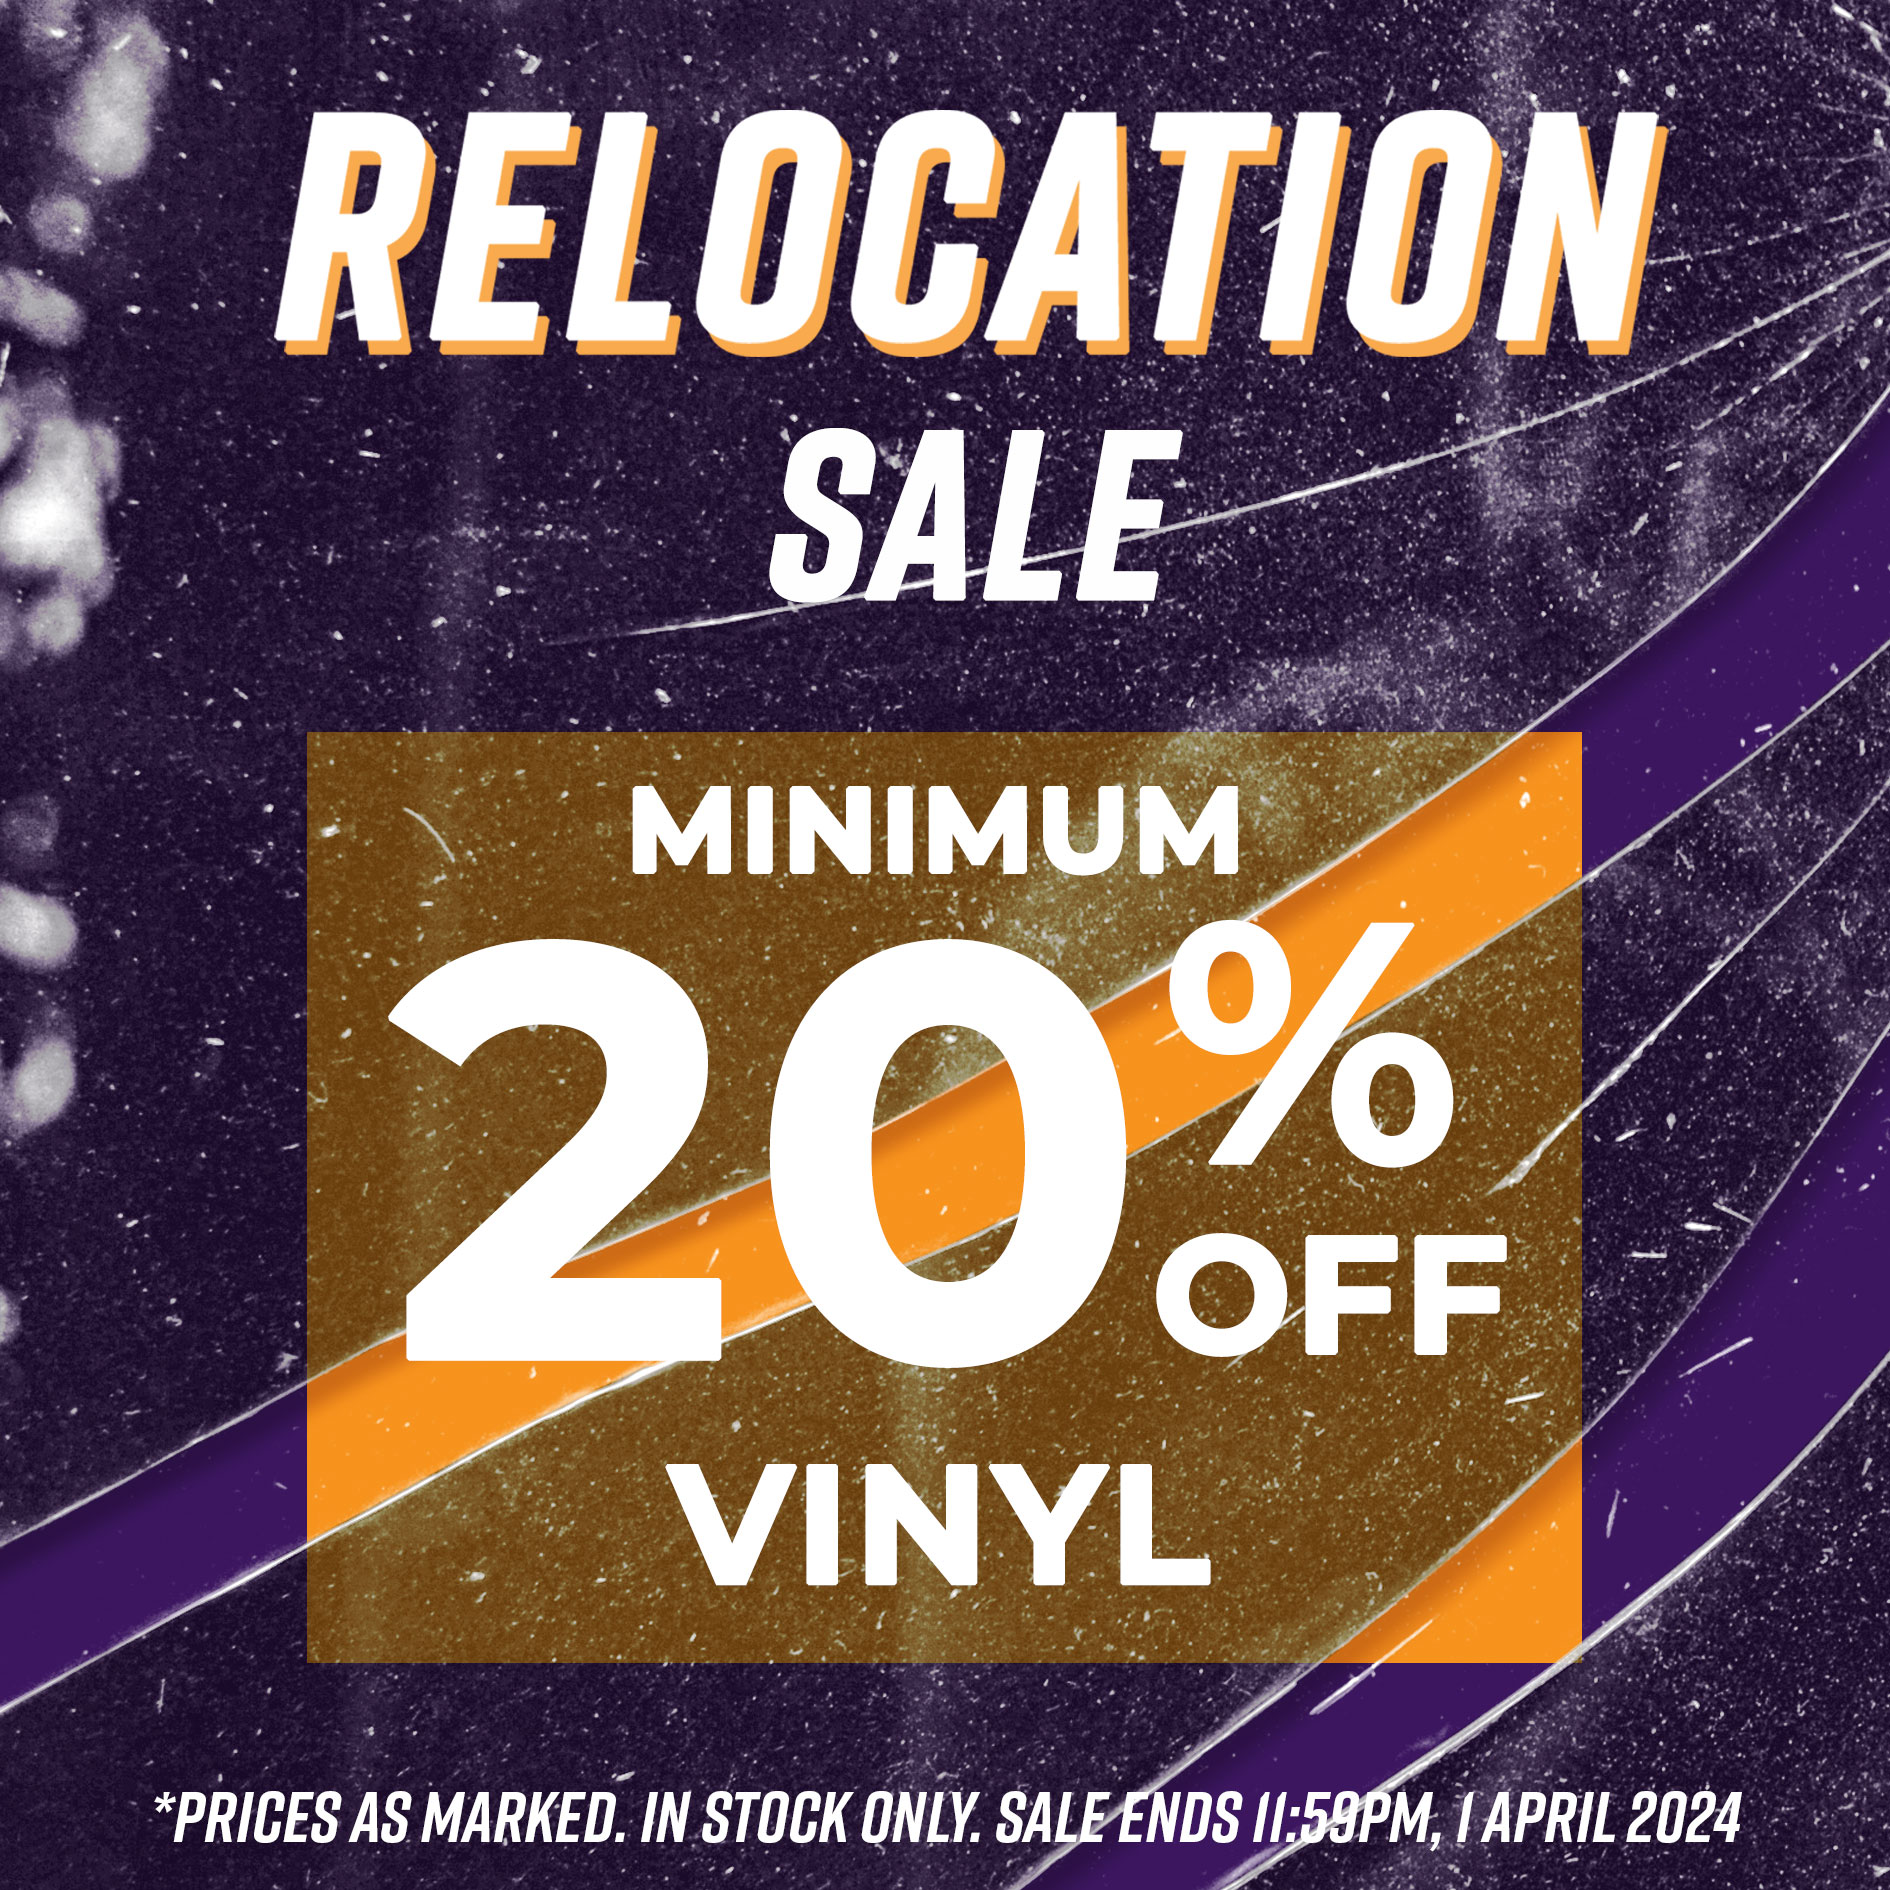 Buy Vinyl Now - Minimum 20% Off